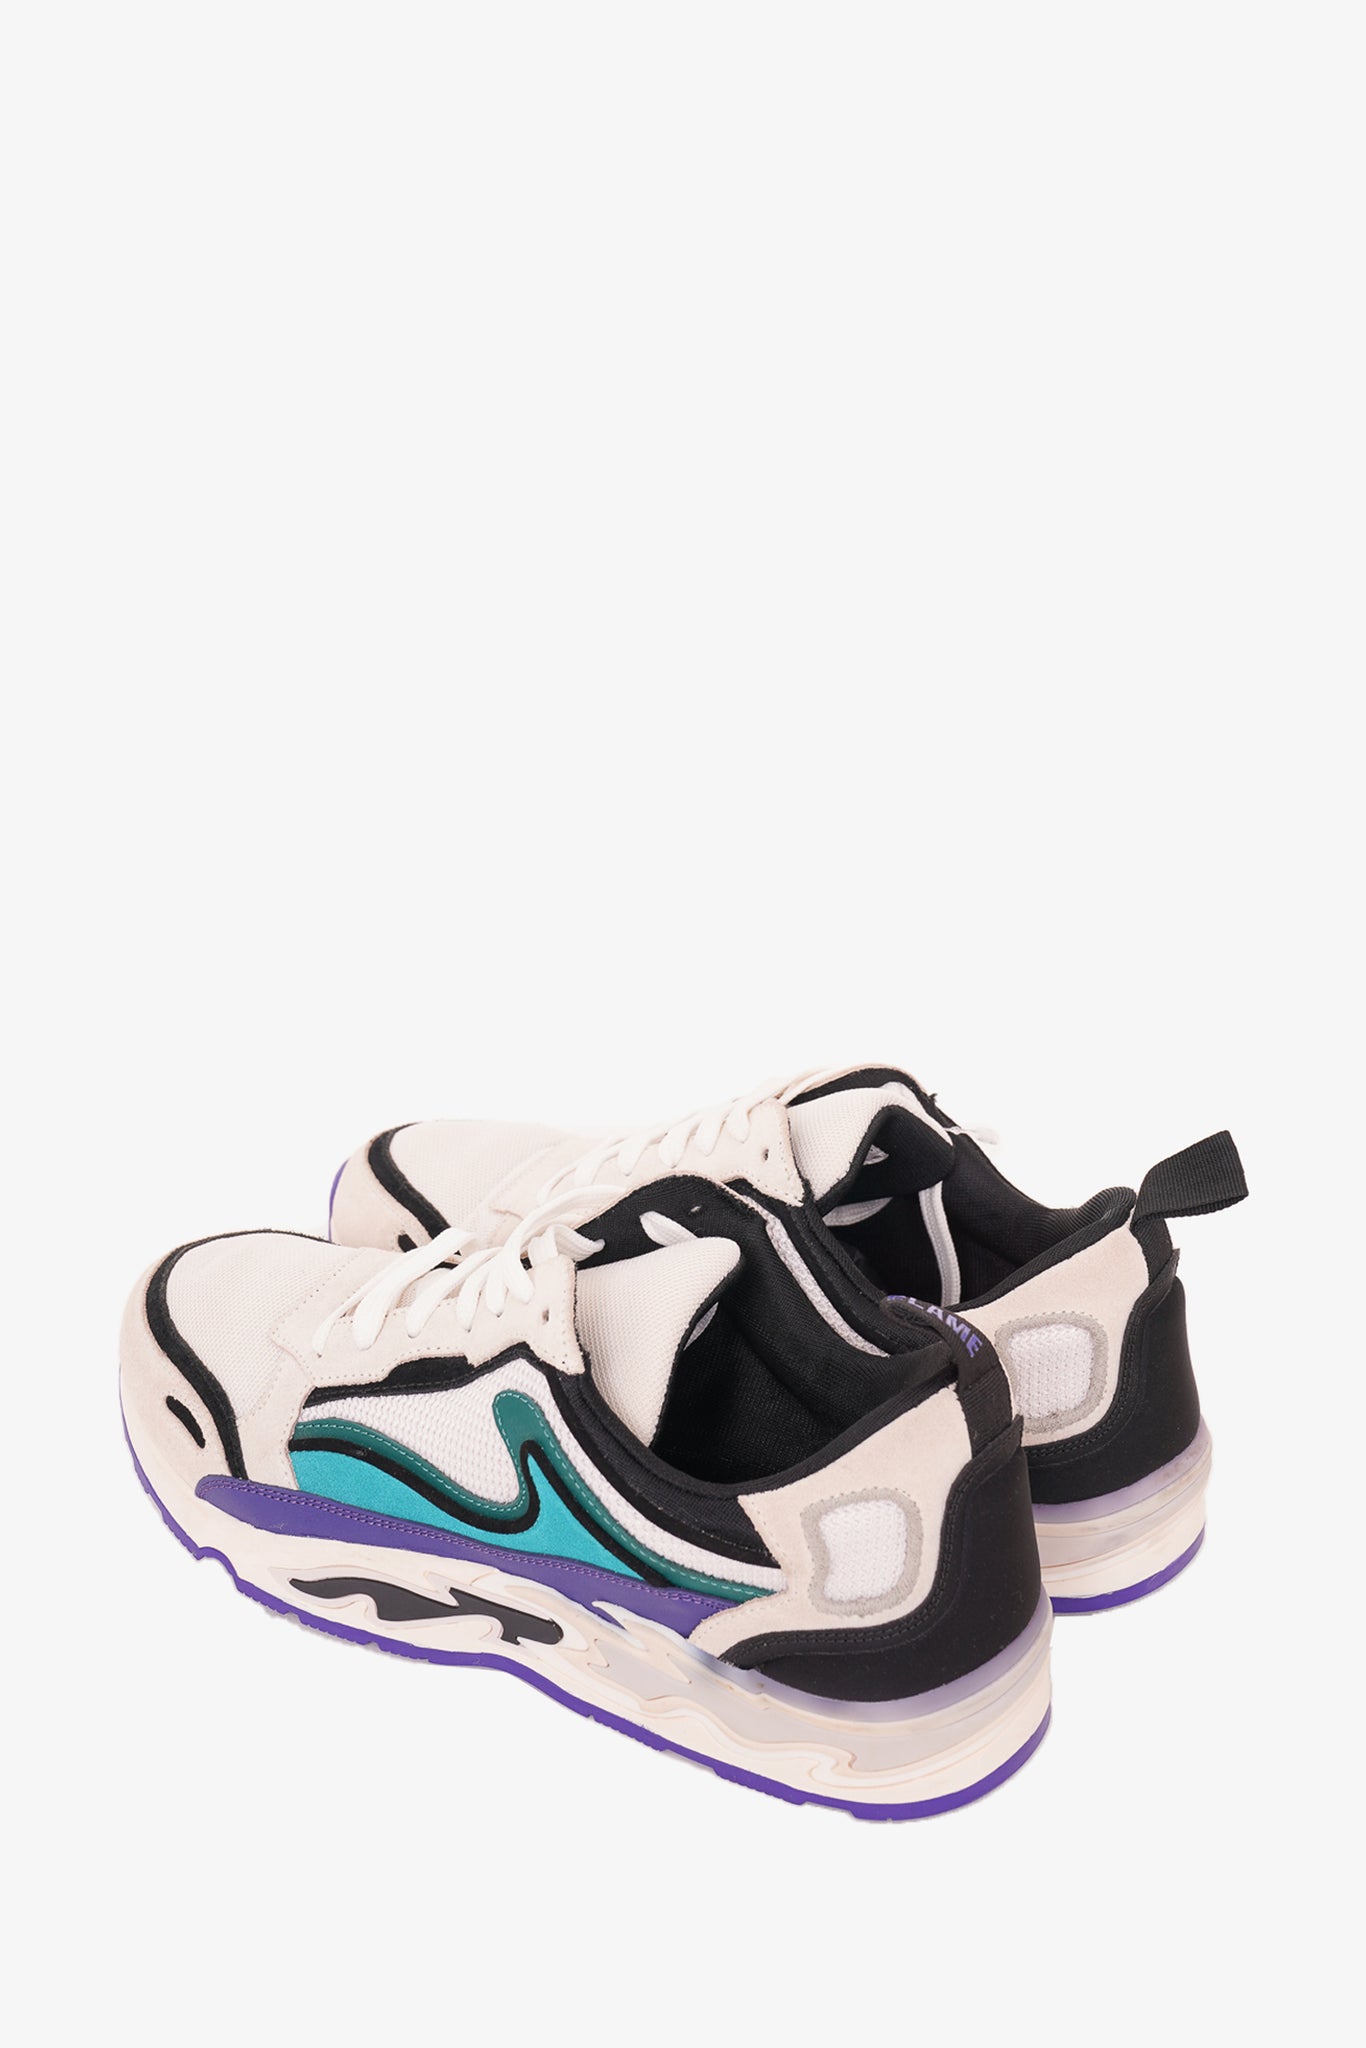 Sandro Multicolor Flame Sneaker Size 8